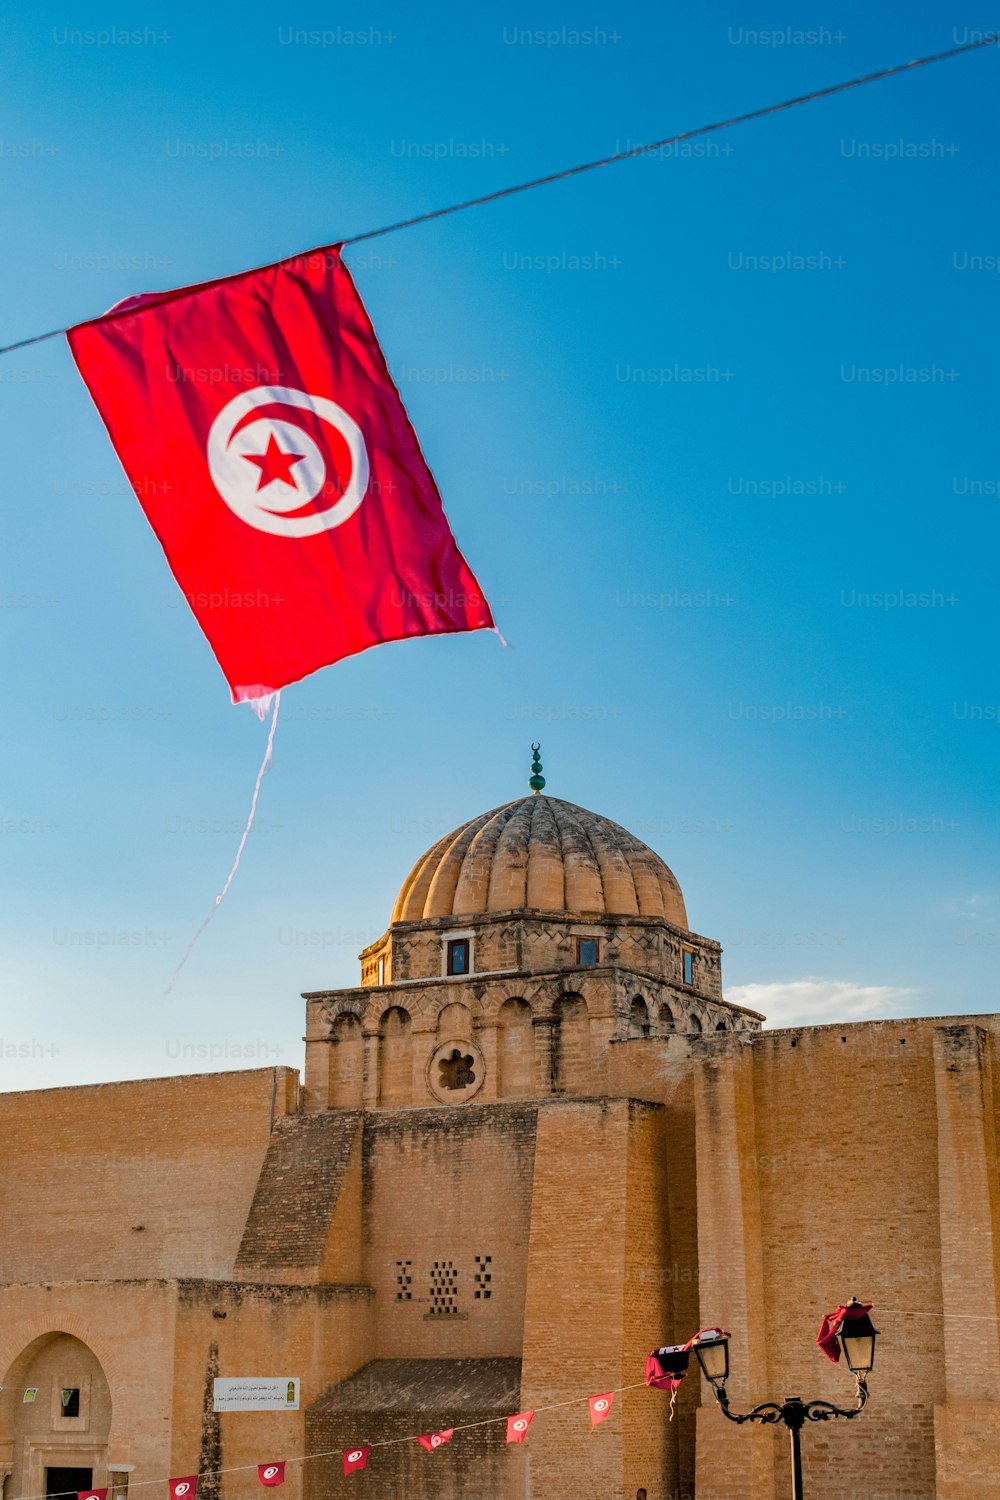 Un contrapunto de la Gran Mezquita de Kairuán en Túnez